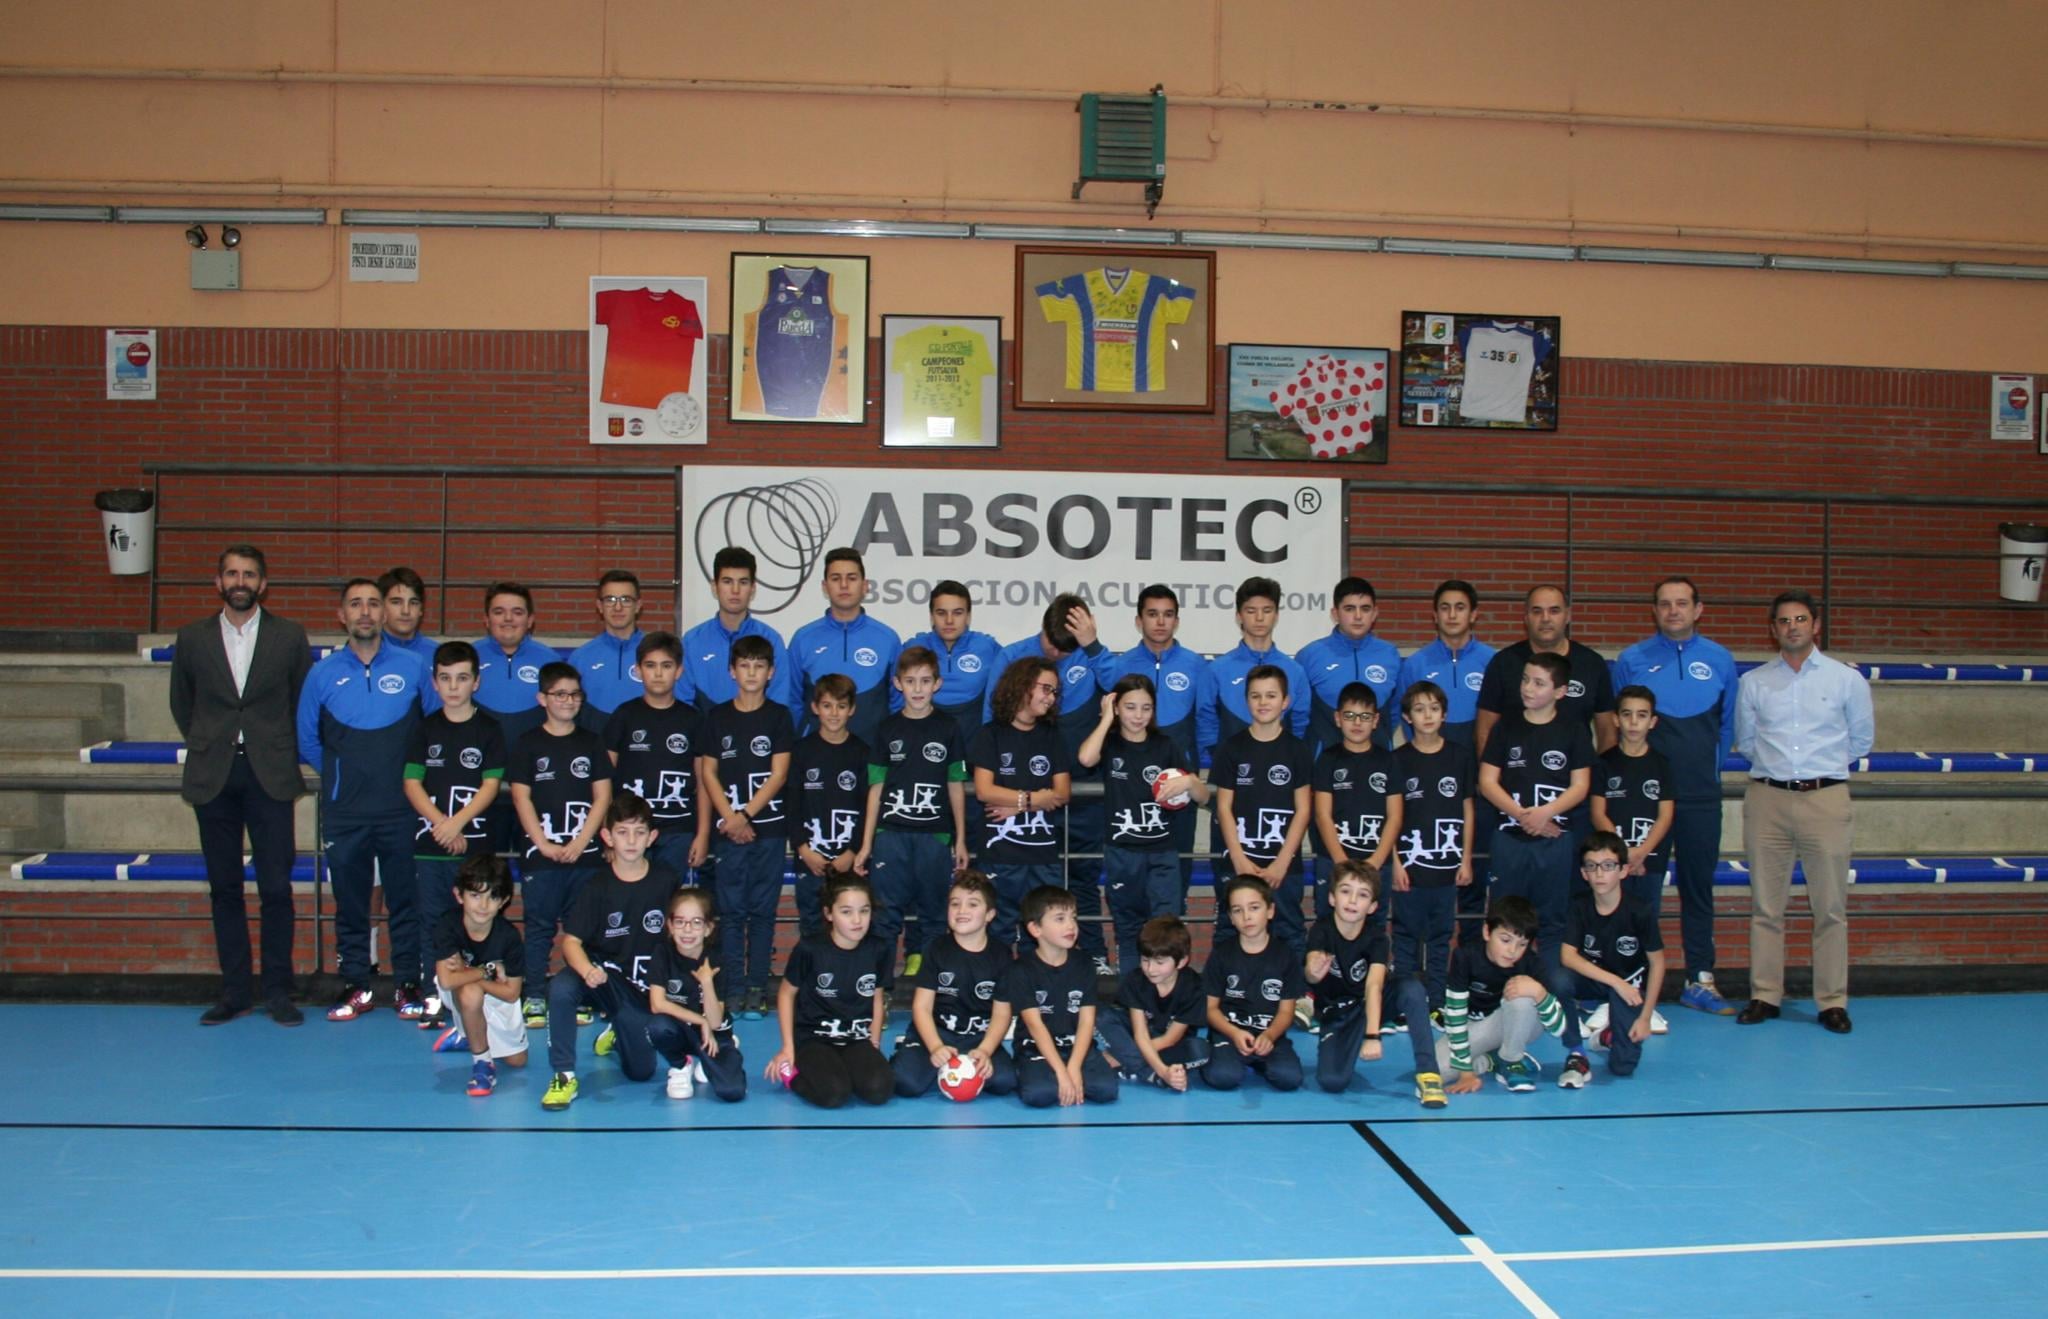 Absotec apoya el deporte base de la comunidad